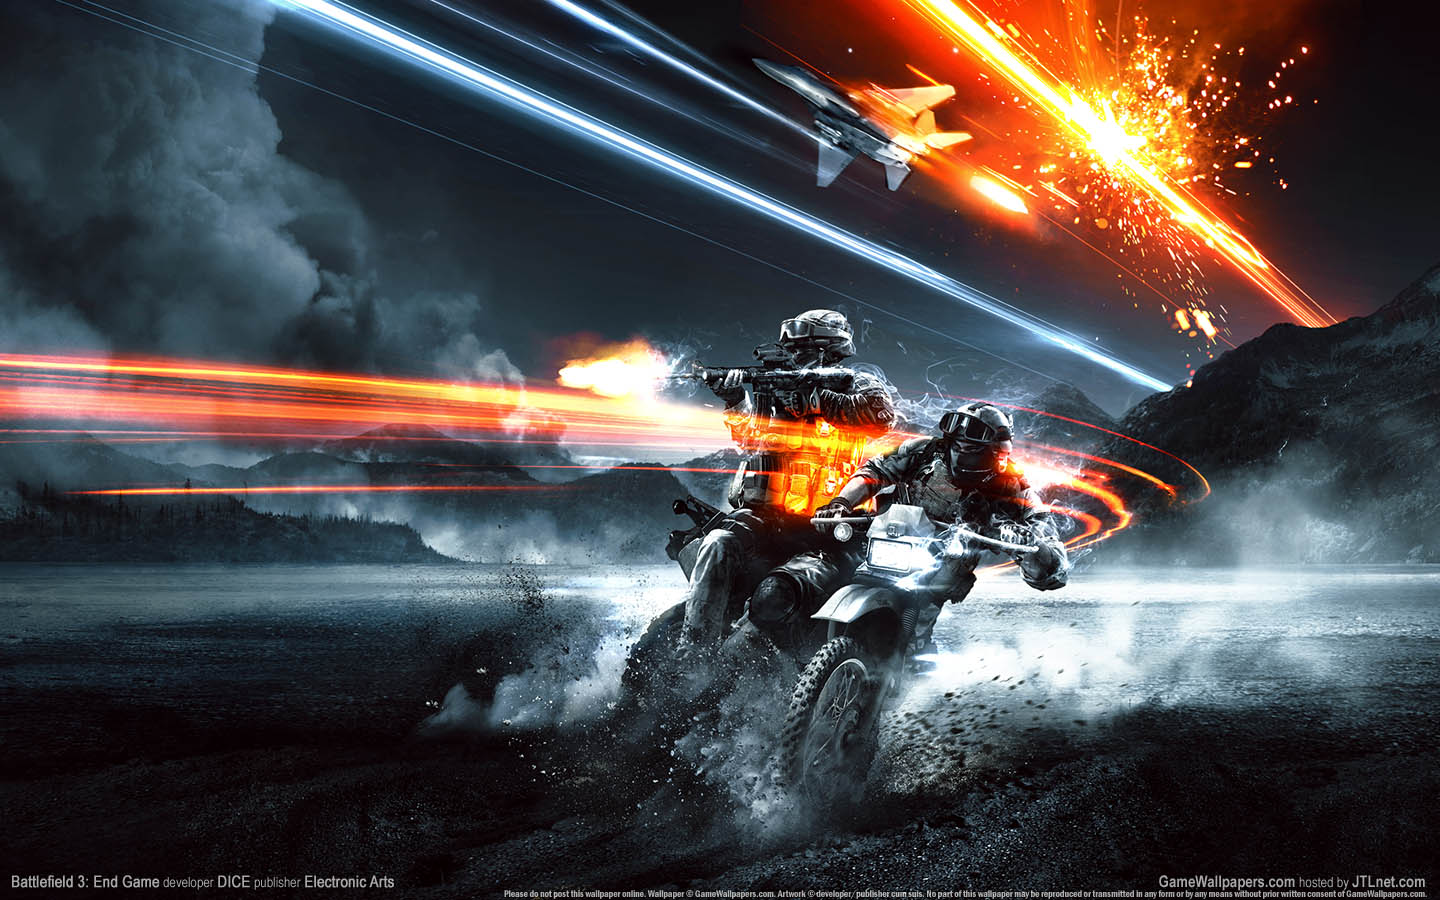 Battlefield 3: End Game fond d'cran 01 1440x900